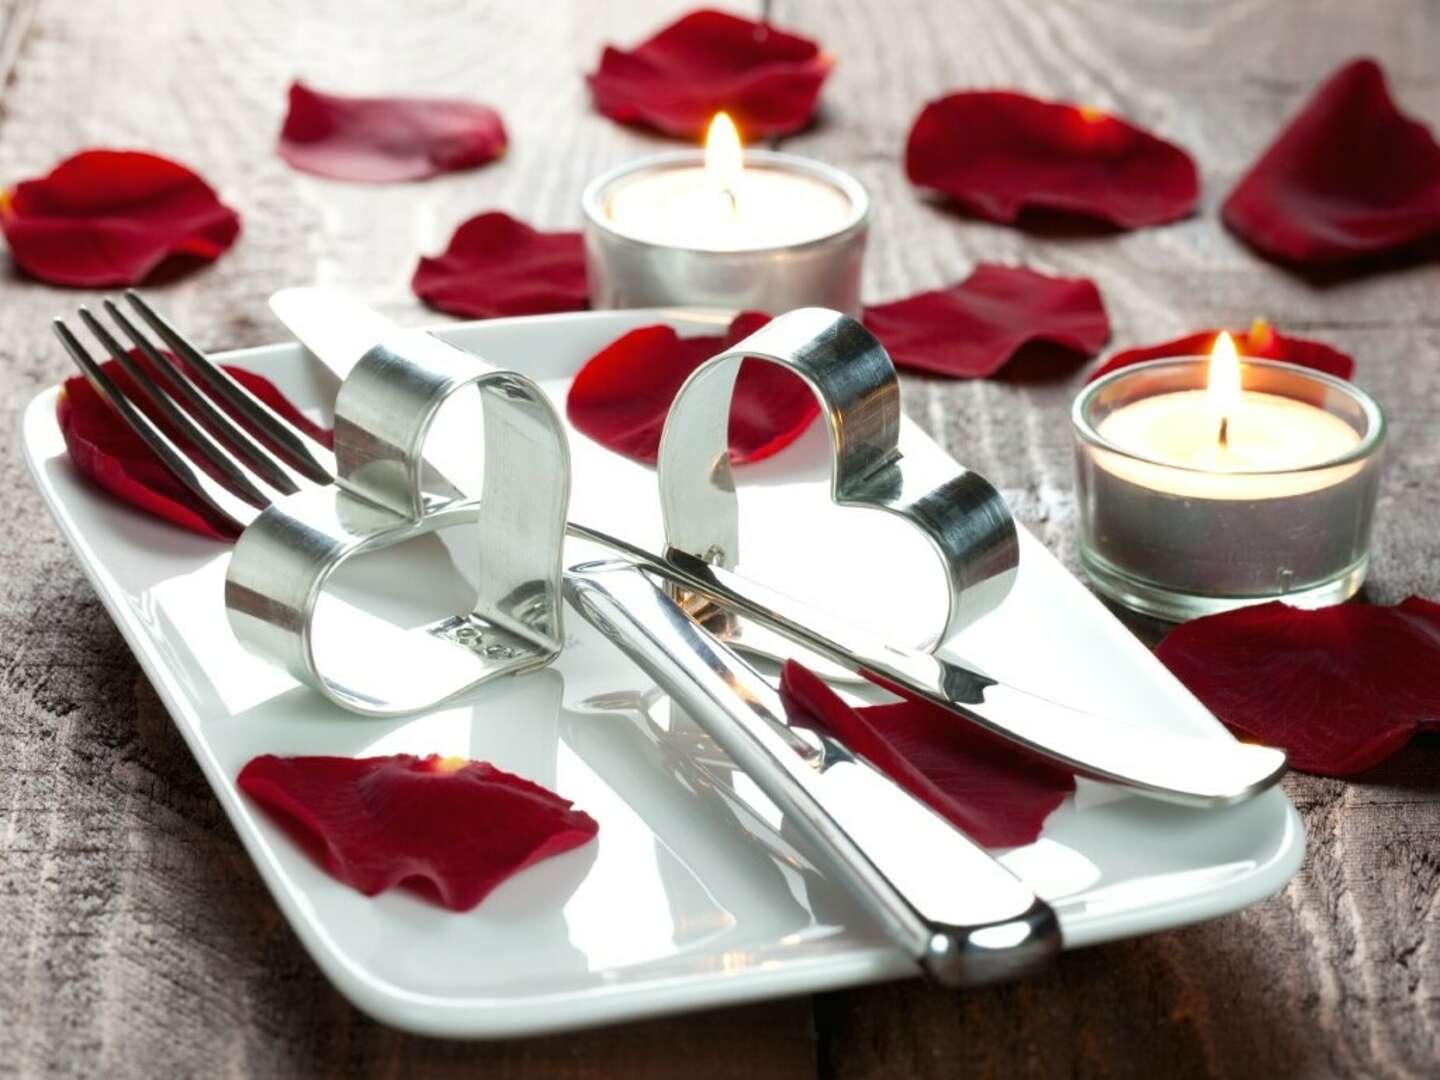 Zeit zu Zweit mit Wellness & romantischem Diner